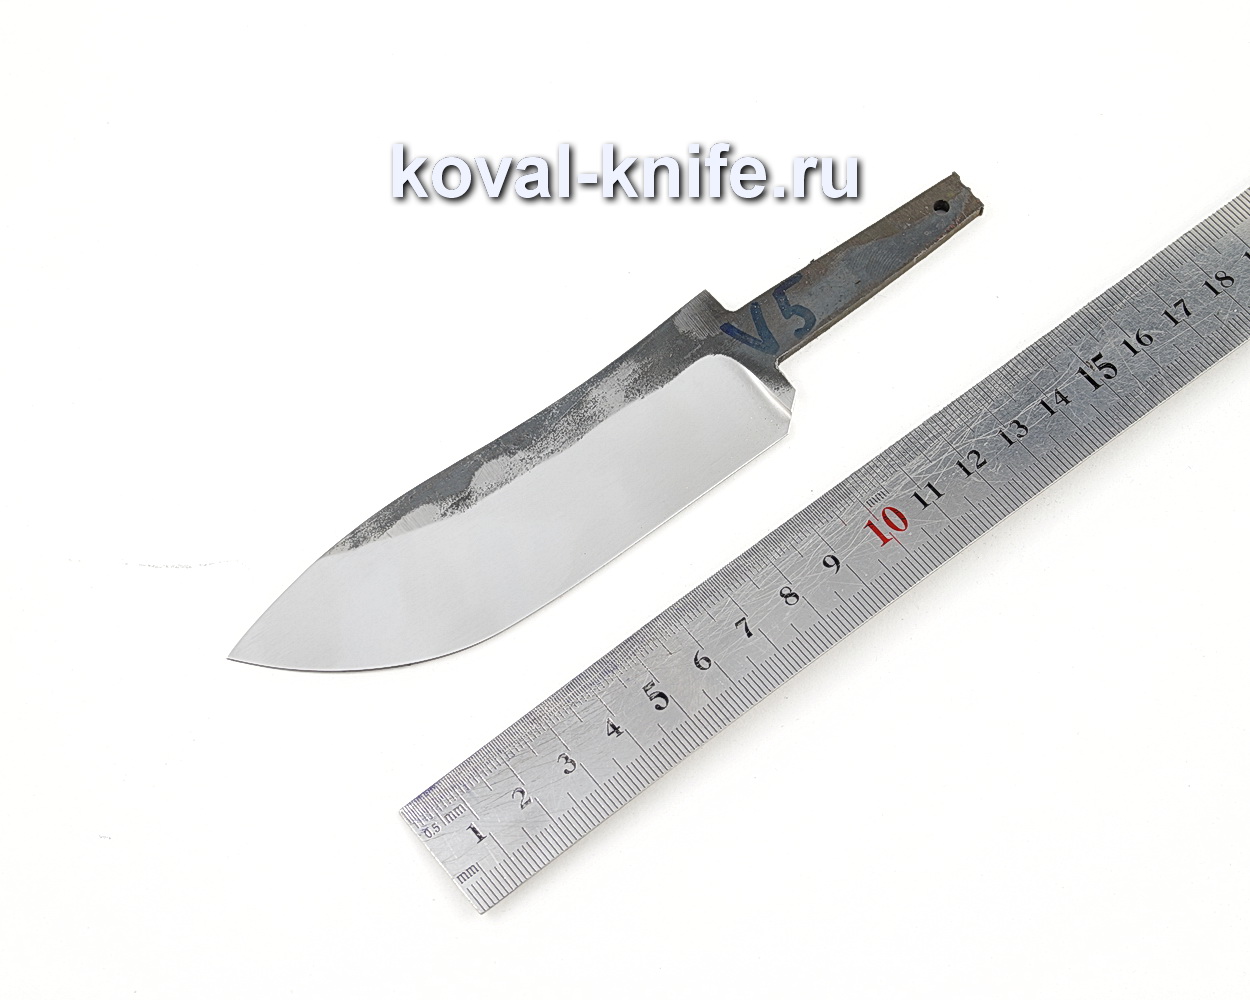 купить клинок для ножа от Кузницы Коваль